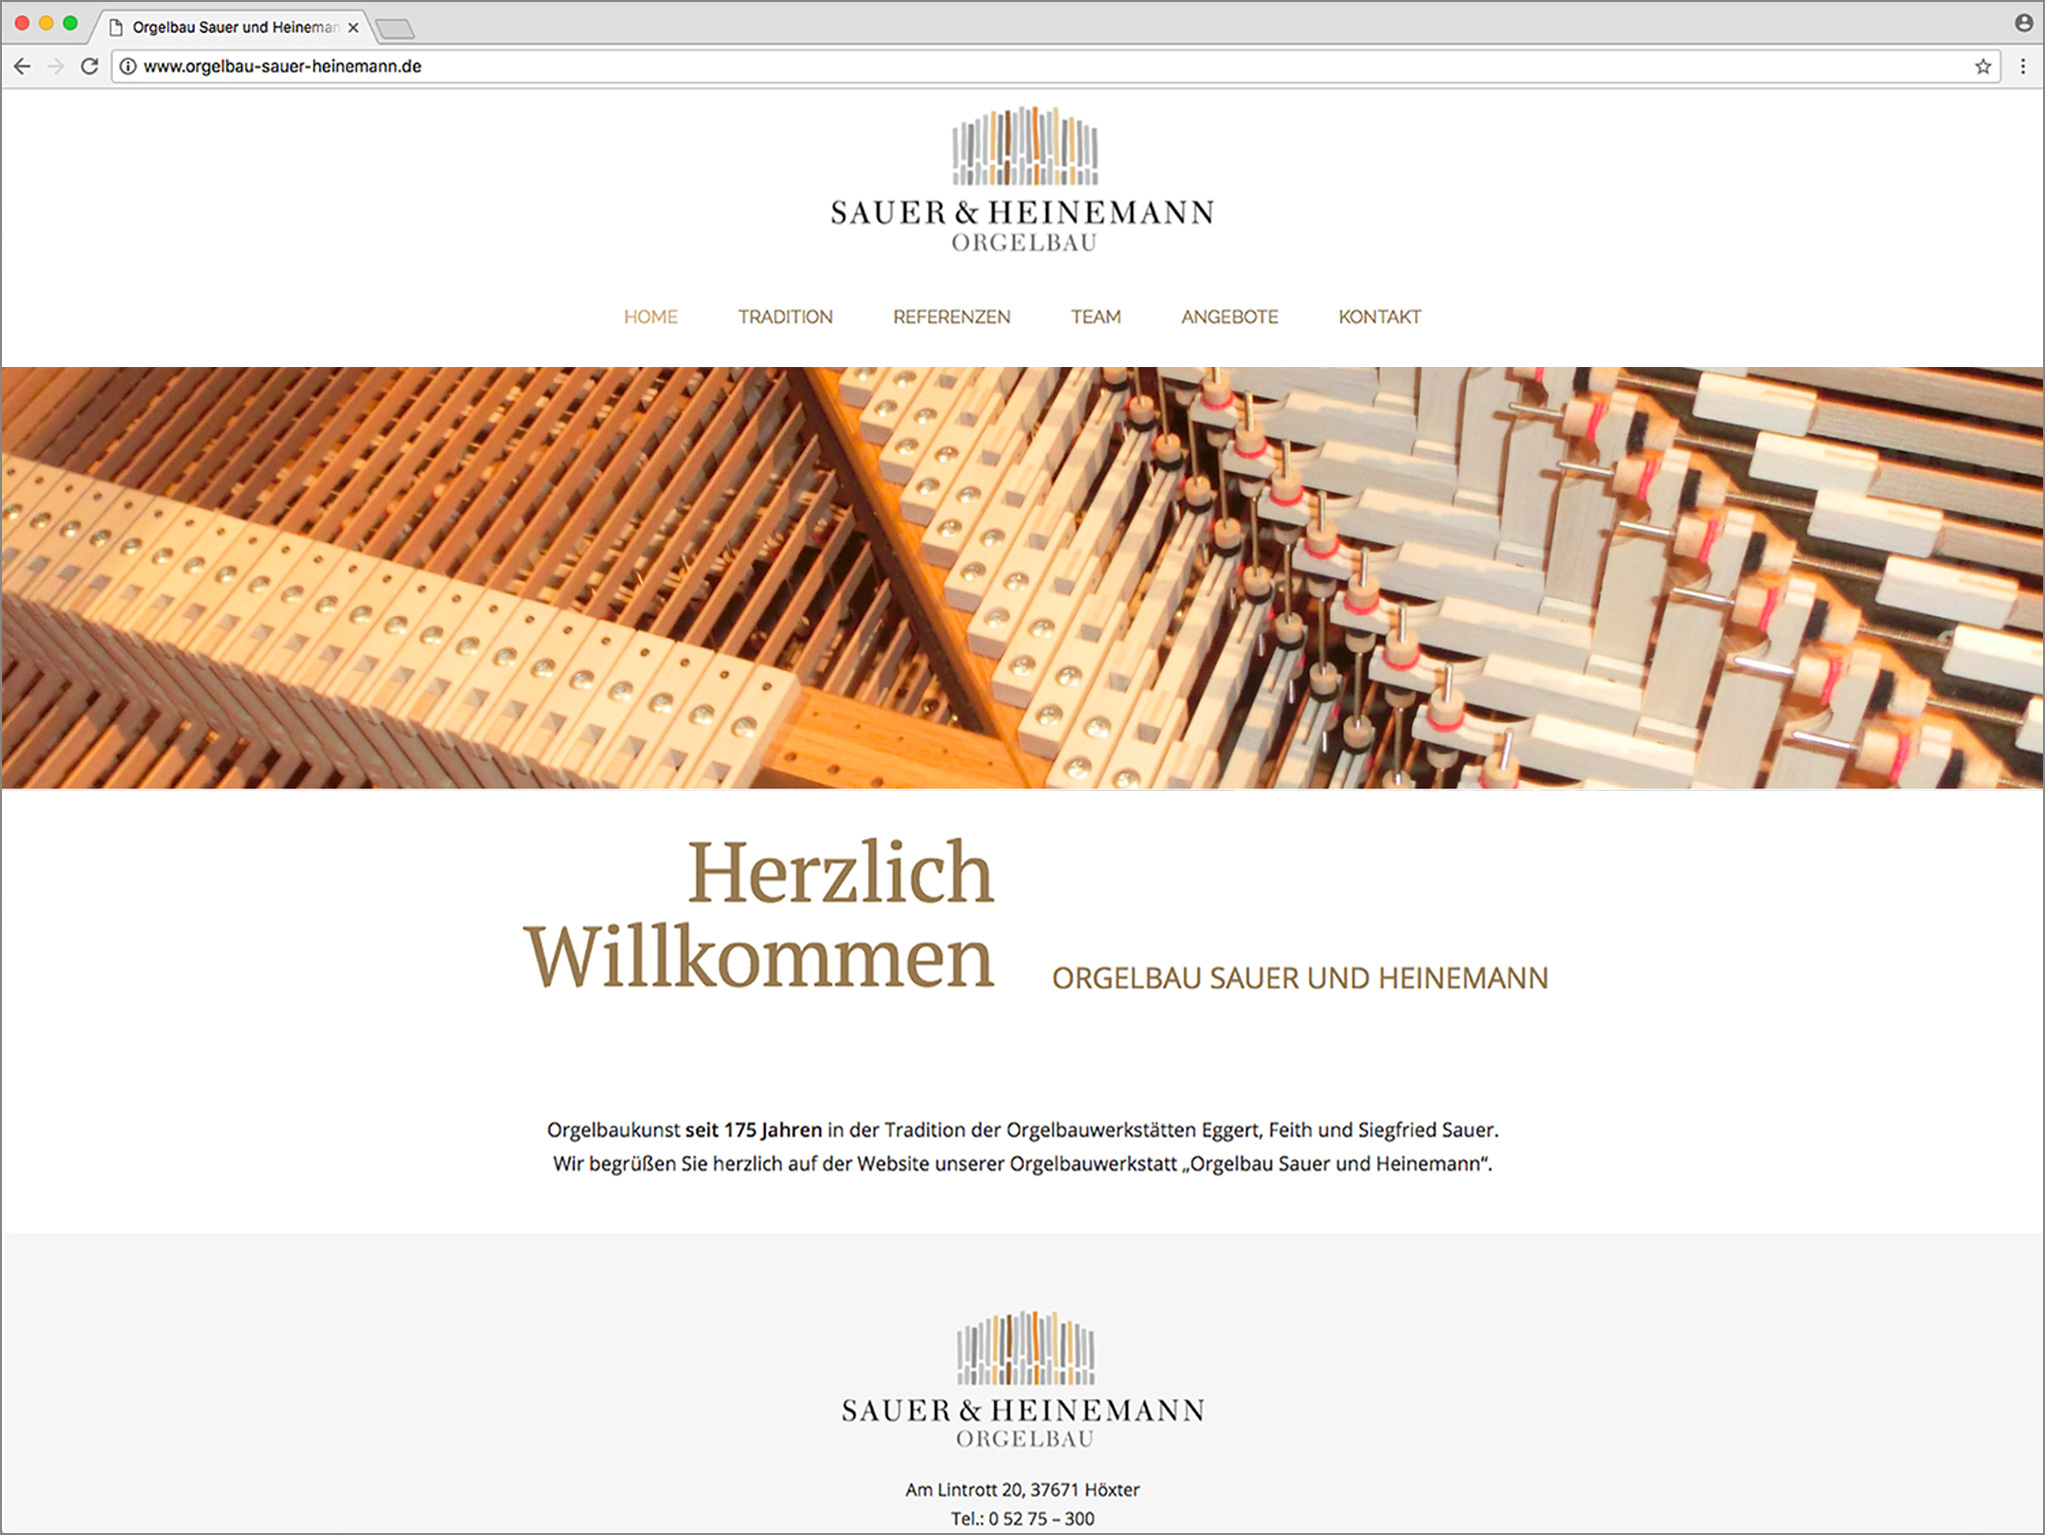 Hüppmeier Marketing und Design GmbH - Referenzen - Webdesign - Orgelbau Sauer & Heinemann Web Titel